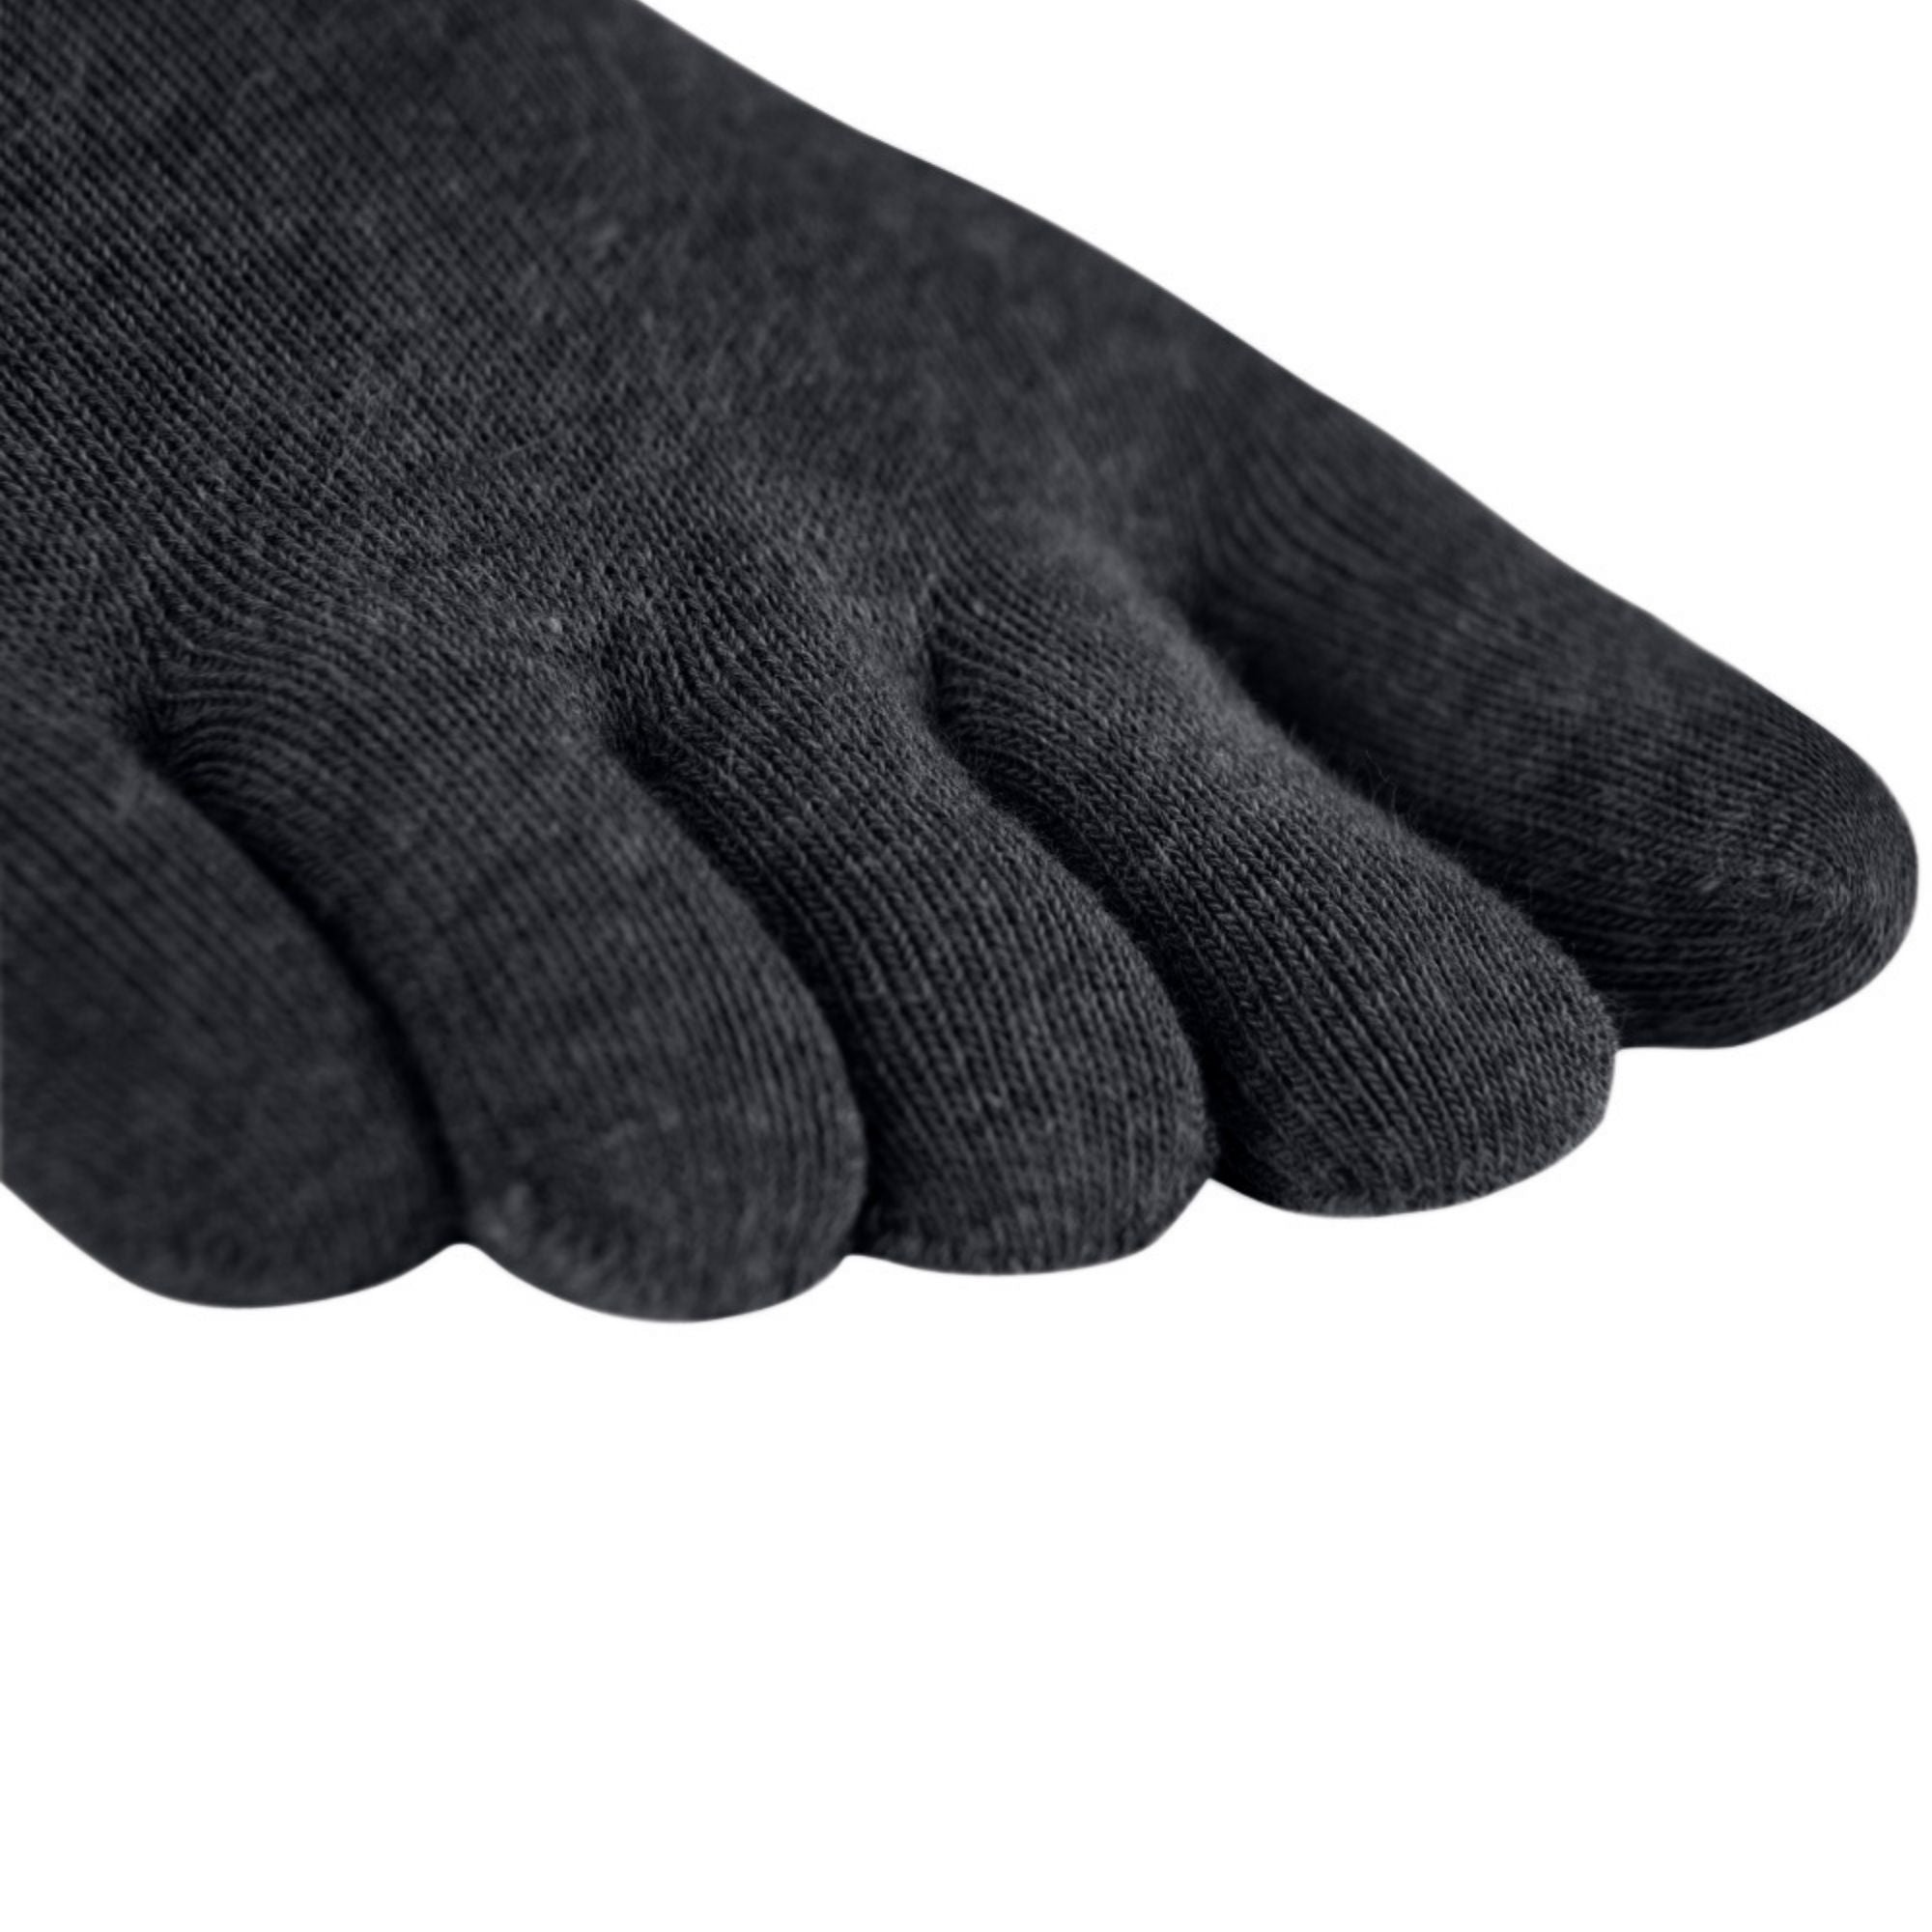 3er Sparpack Sport-Zehensocken aus Coolmax und Baumwolle von Knitido in charcoal grey